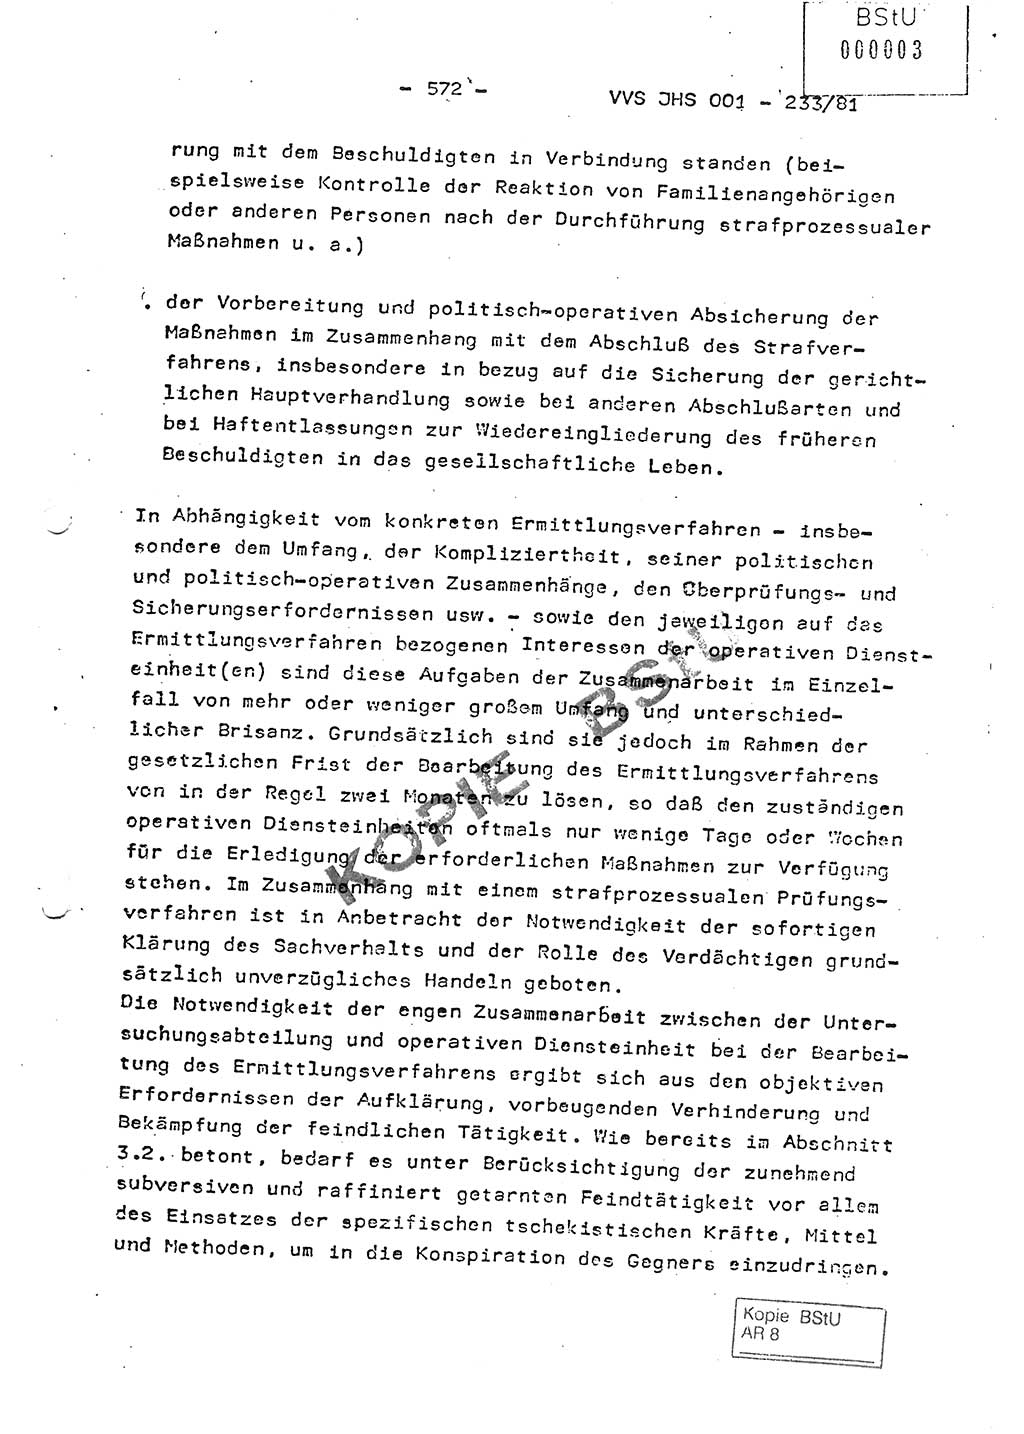 Dissertation Oberstleutnant Horst Zank (JHS), Oberstleutnant Dr. Karl-Heinz Knoblauch (JHS), Oberstleutnant Gustav-Adolf Kowalewski (HA Ⅸ), Oberstleutnant Wolfgang Plötner (HA Ⅸ), Ministerium für Staatssicherheit (MfS) [Deutsche Demokratische Republik (DDR)], Juristische Hochschule (JHS), Vertrauliche Verschlußsache (VVS) o001-233/81, Potsdam 1981, Blatt 572 (Diss. MfS DDR JHS VVS o001-233/81 1981, Bl. 572)